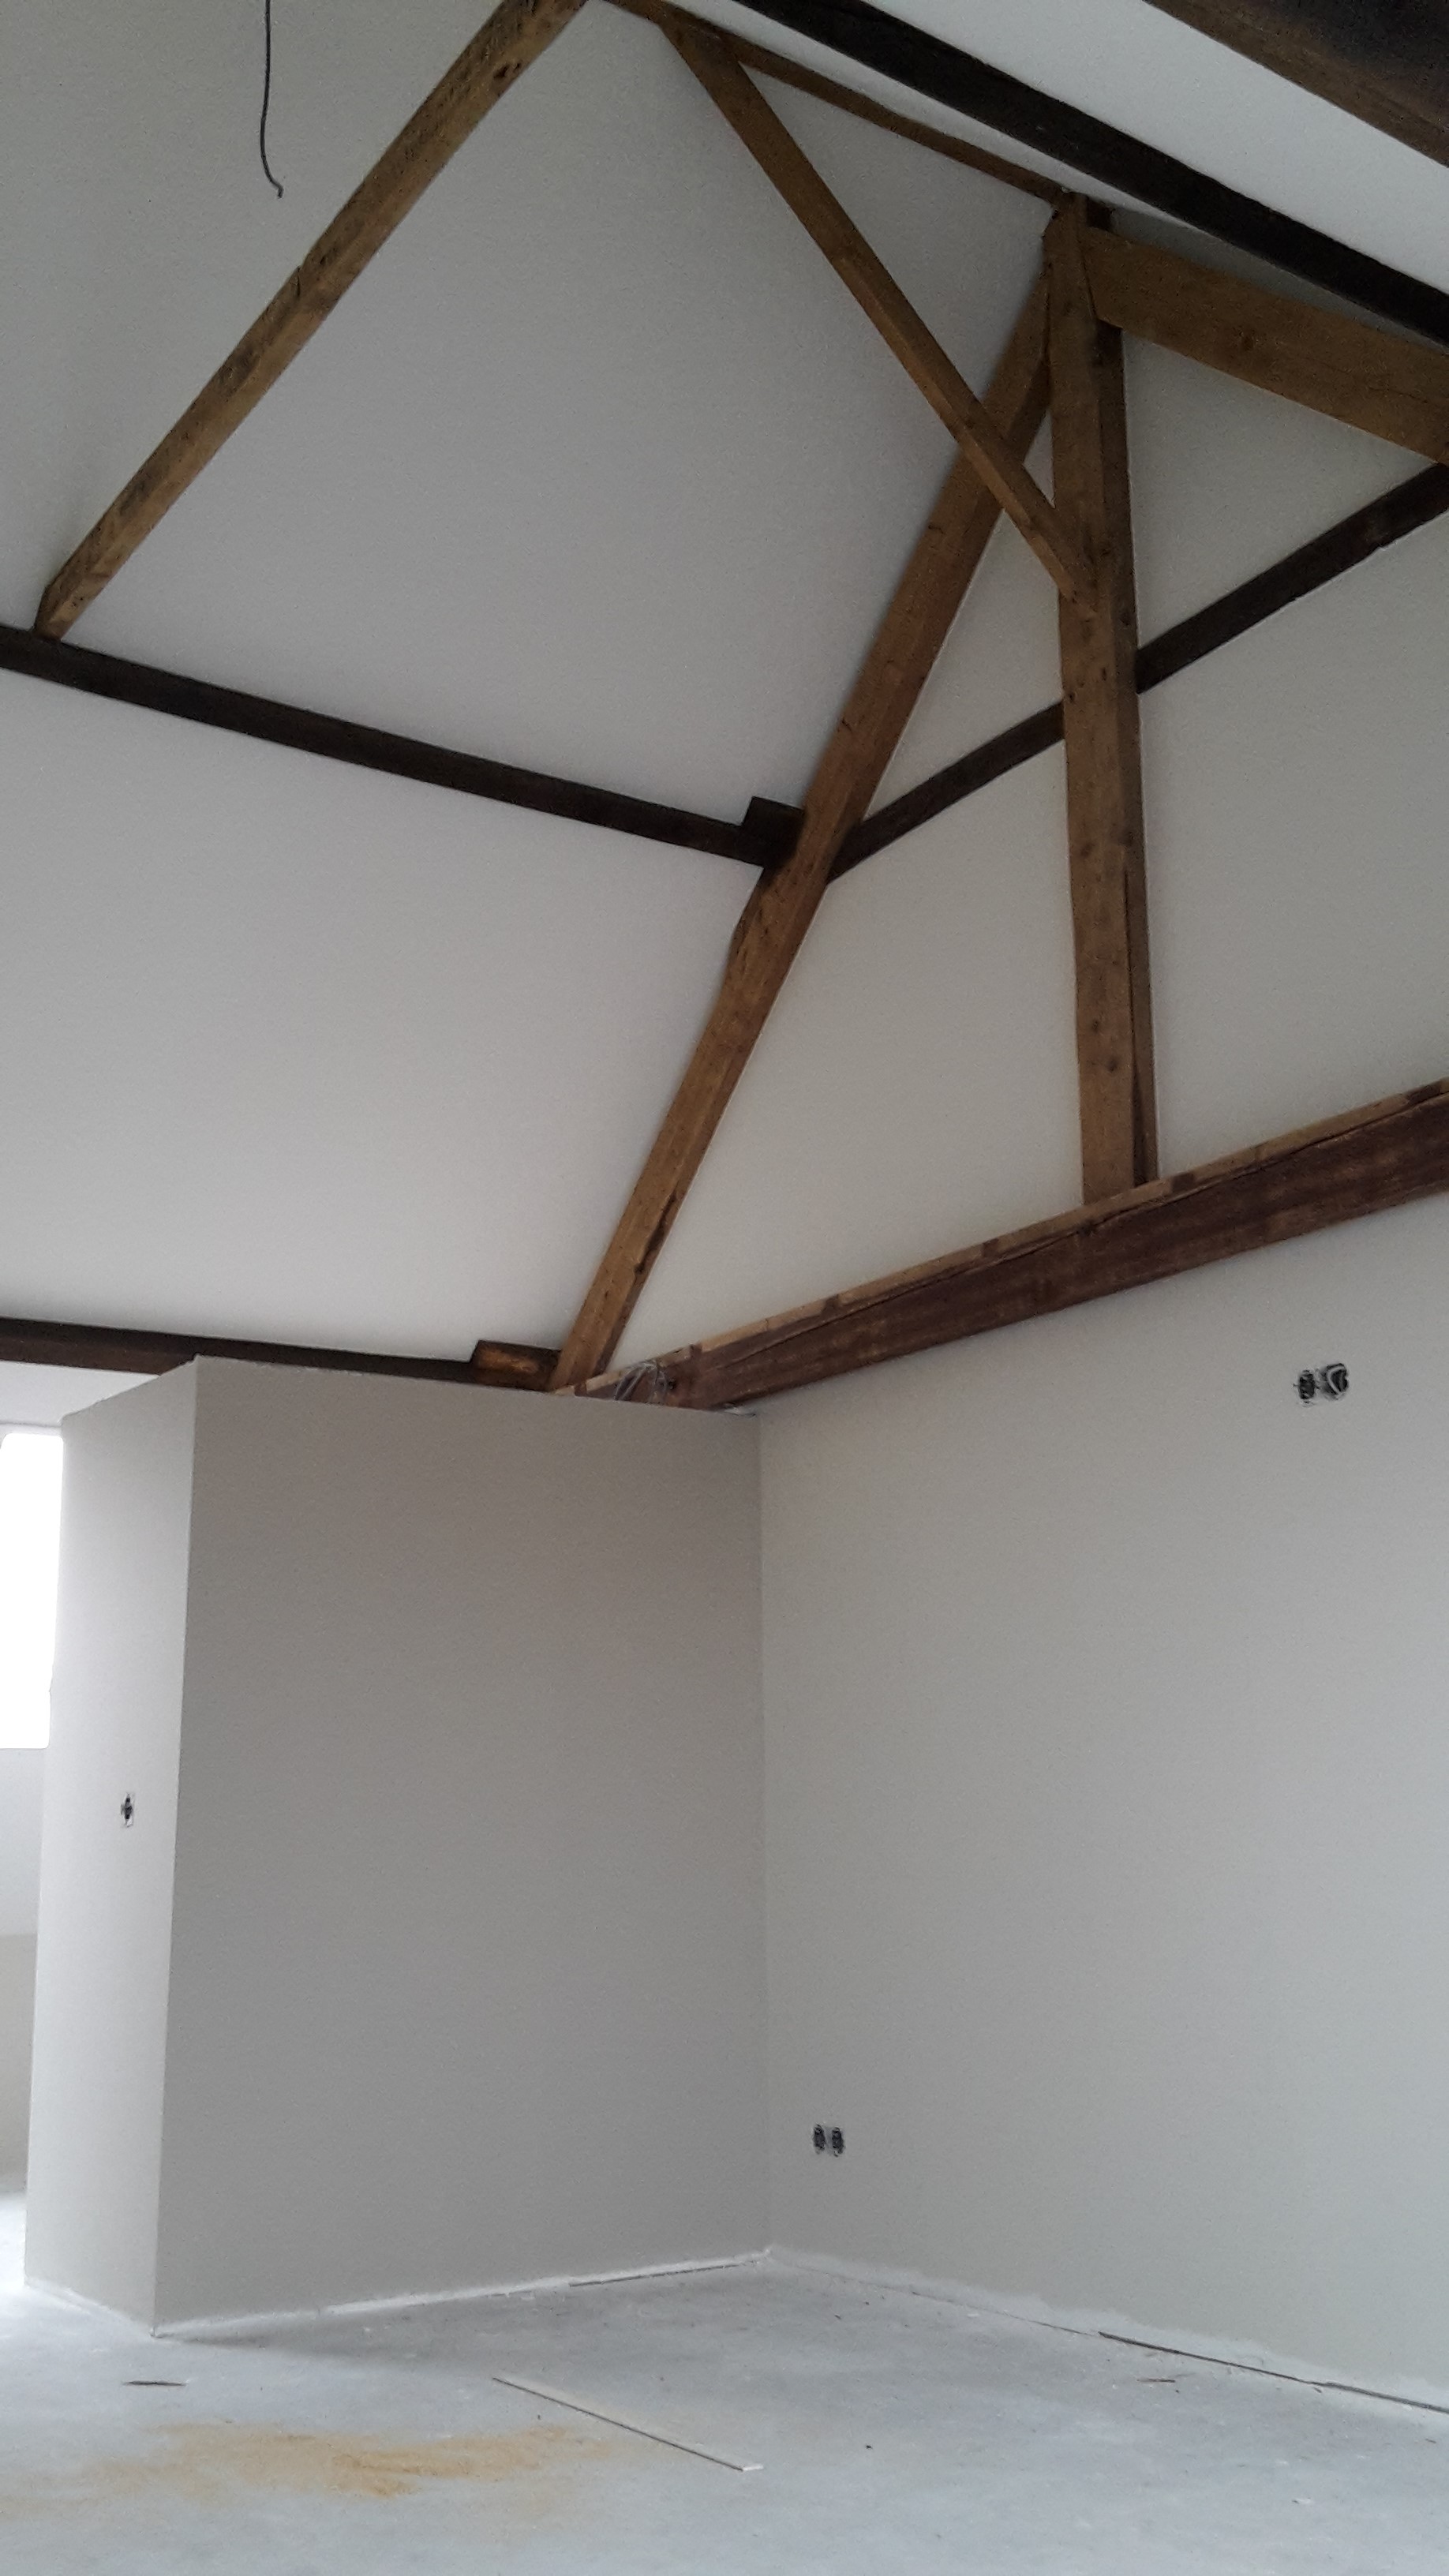 Slaapkamer met hoog plafond en mooie eiken balken (1)